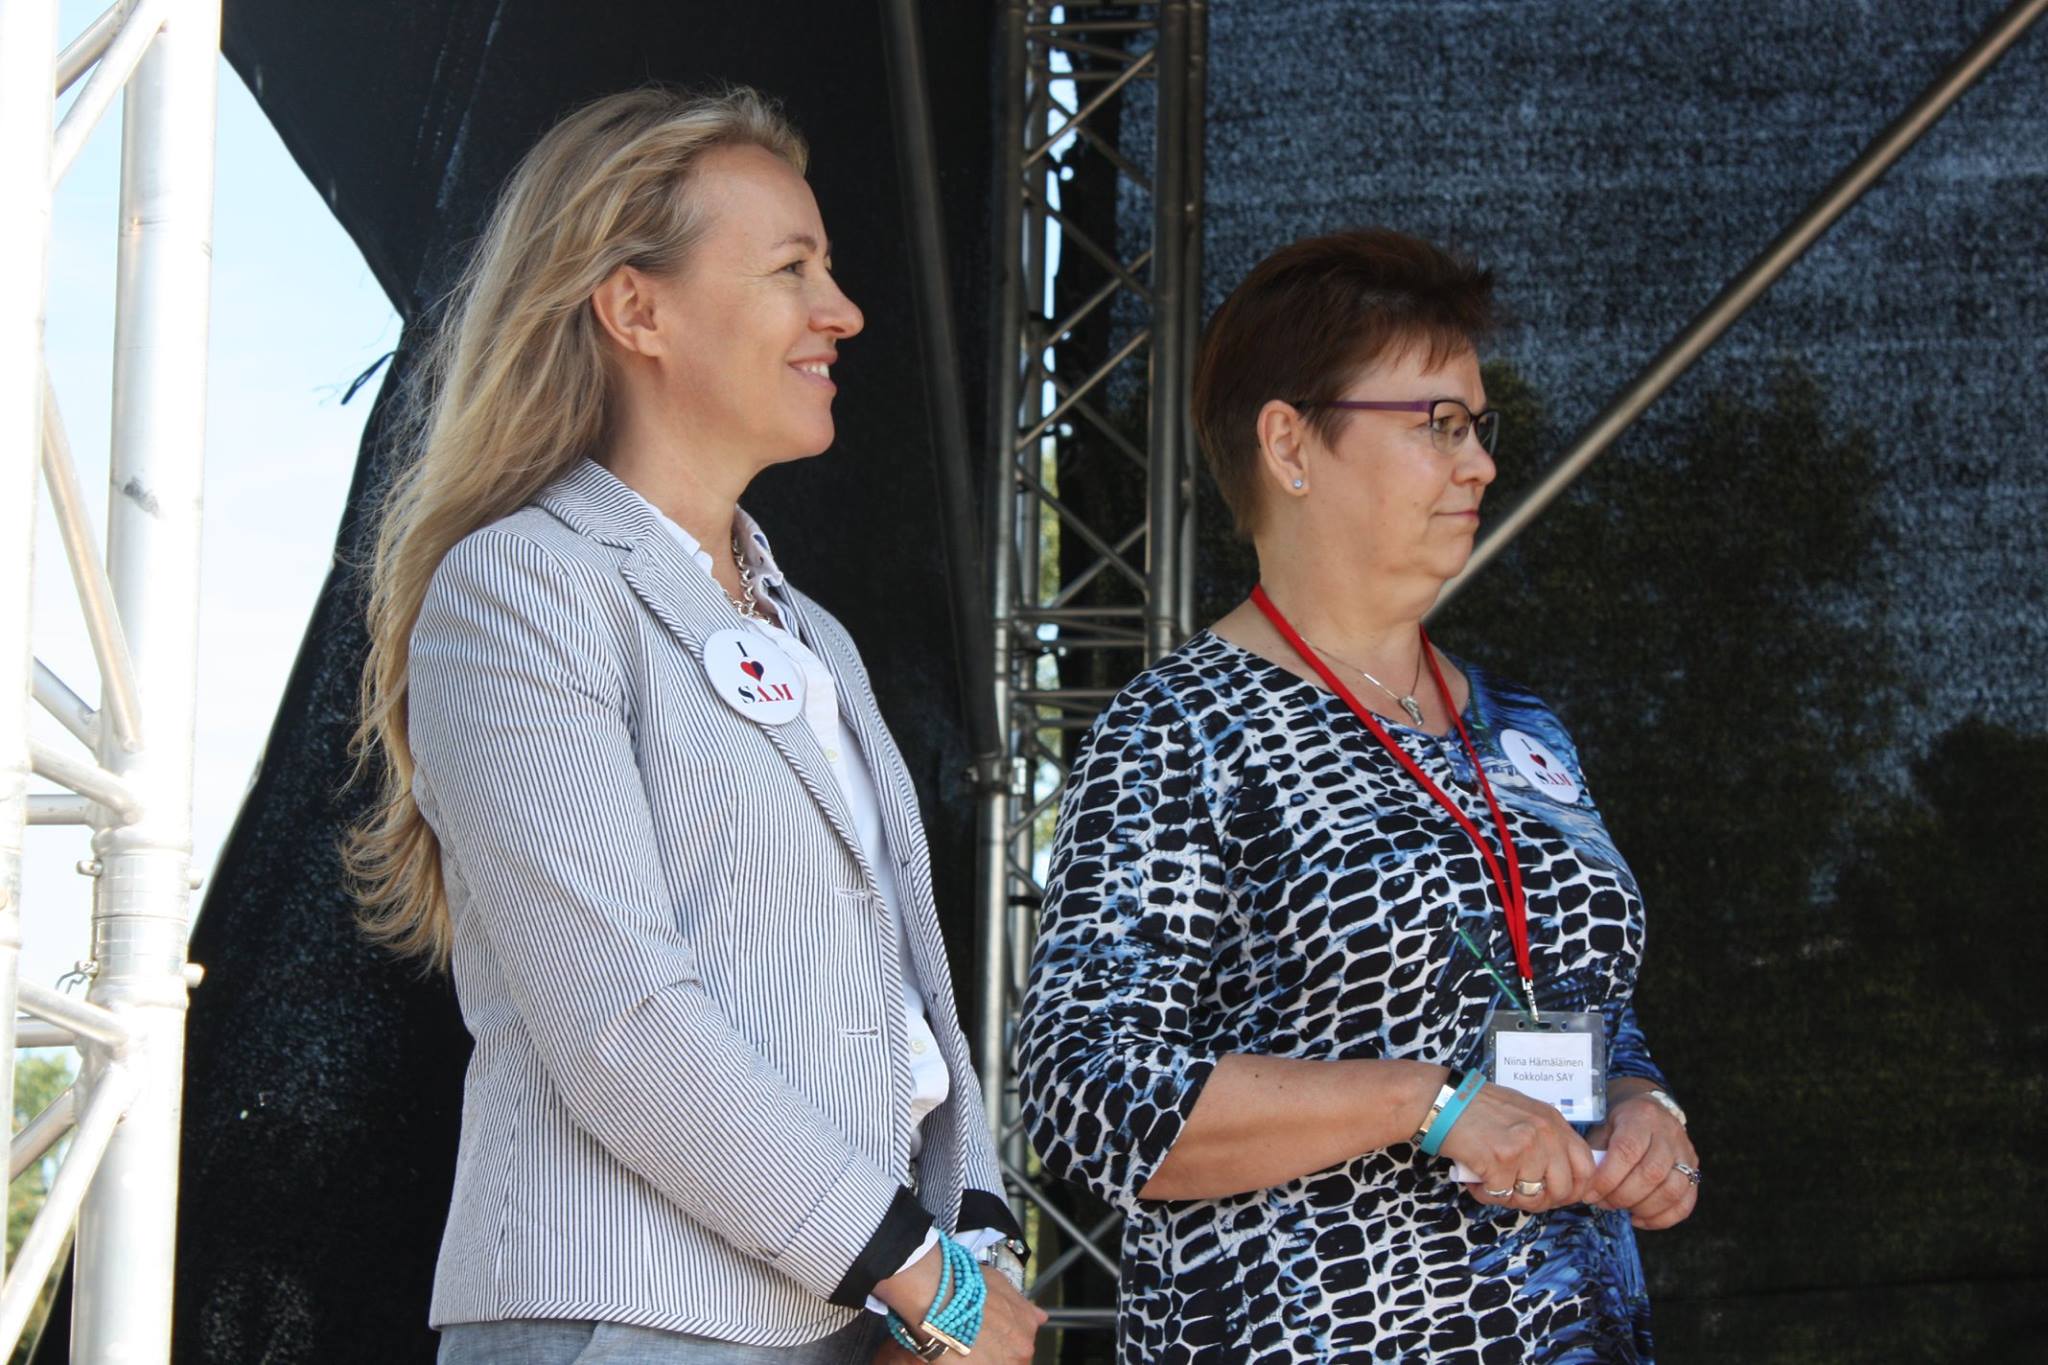 SAYL:n toiminnanjohtaja Lena hartikainen ja Kokkolan yhdistyksen puheenjohtaja toivottivat vieraat tervetulleiksi Amerikan päiville.